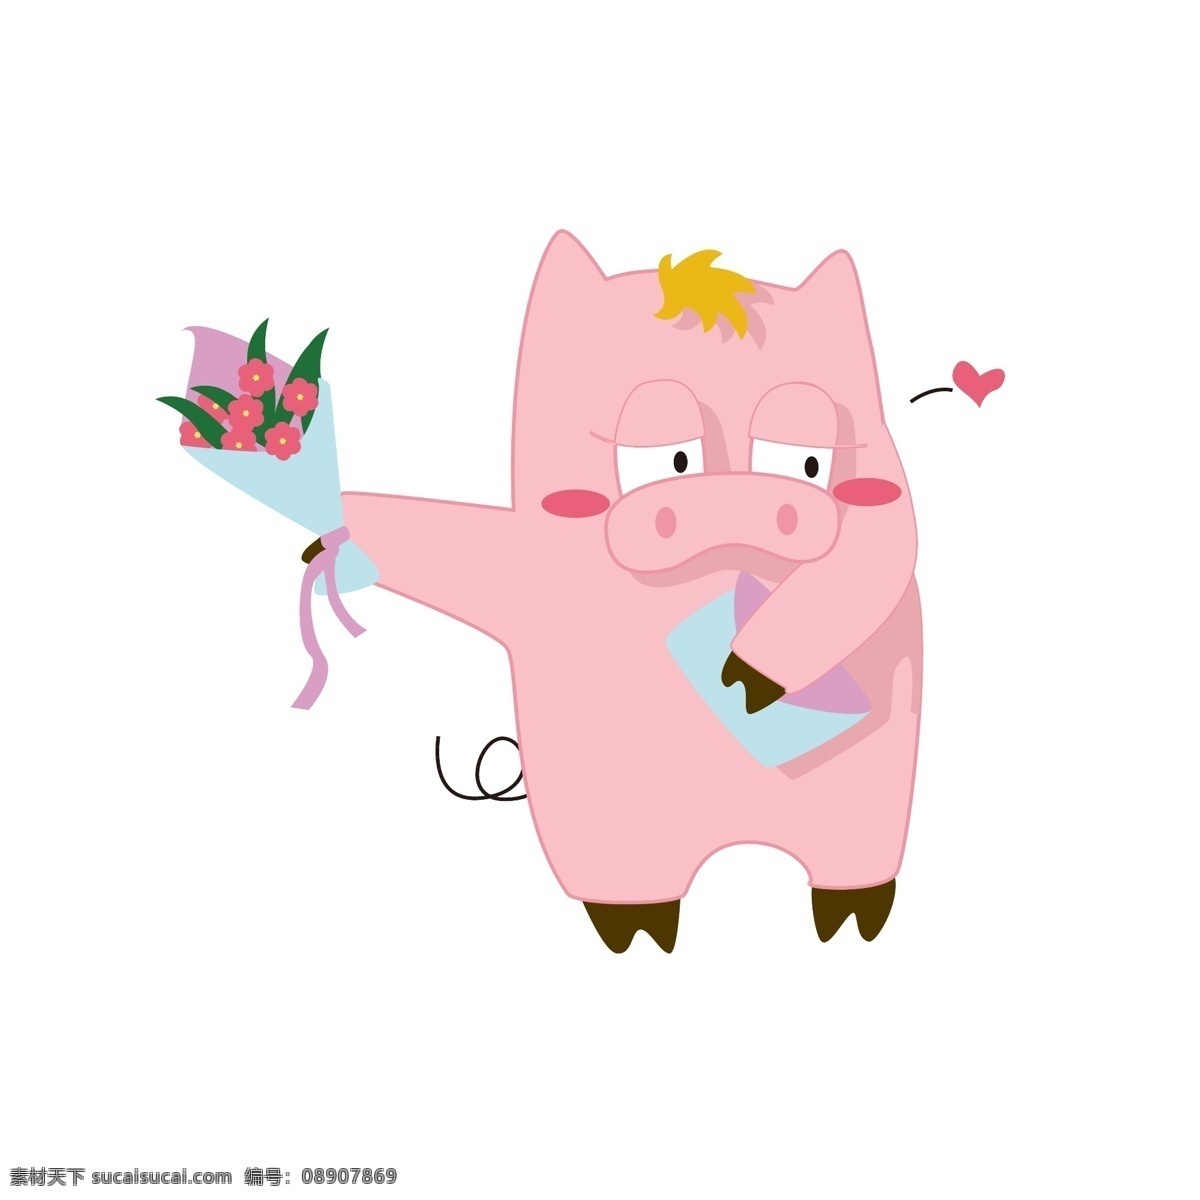 简约 猪年 卡通 猪 形象 表情 包 可爱 风格 表白 花束 害羞 卡通猪 矢量 简约猪 猪形象 表情包 喜欢你 粉红猪